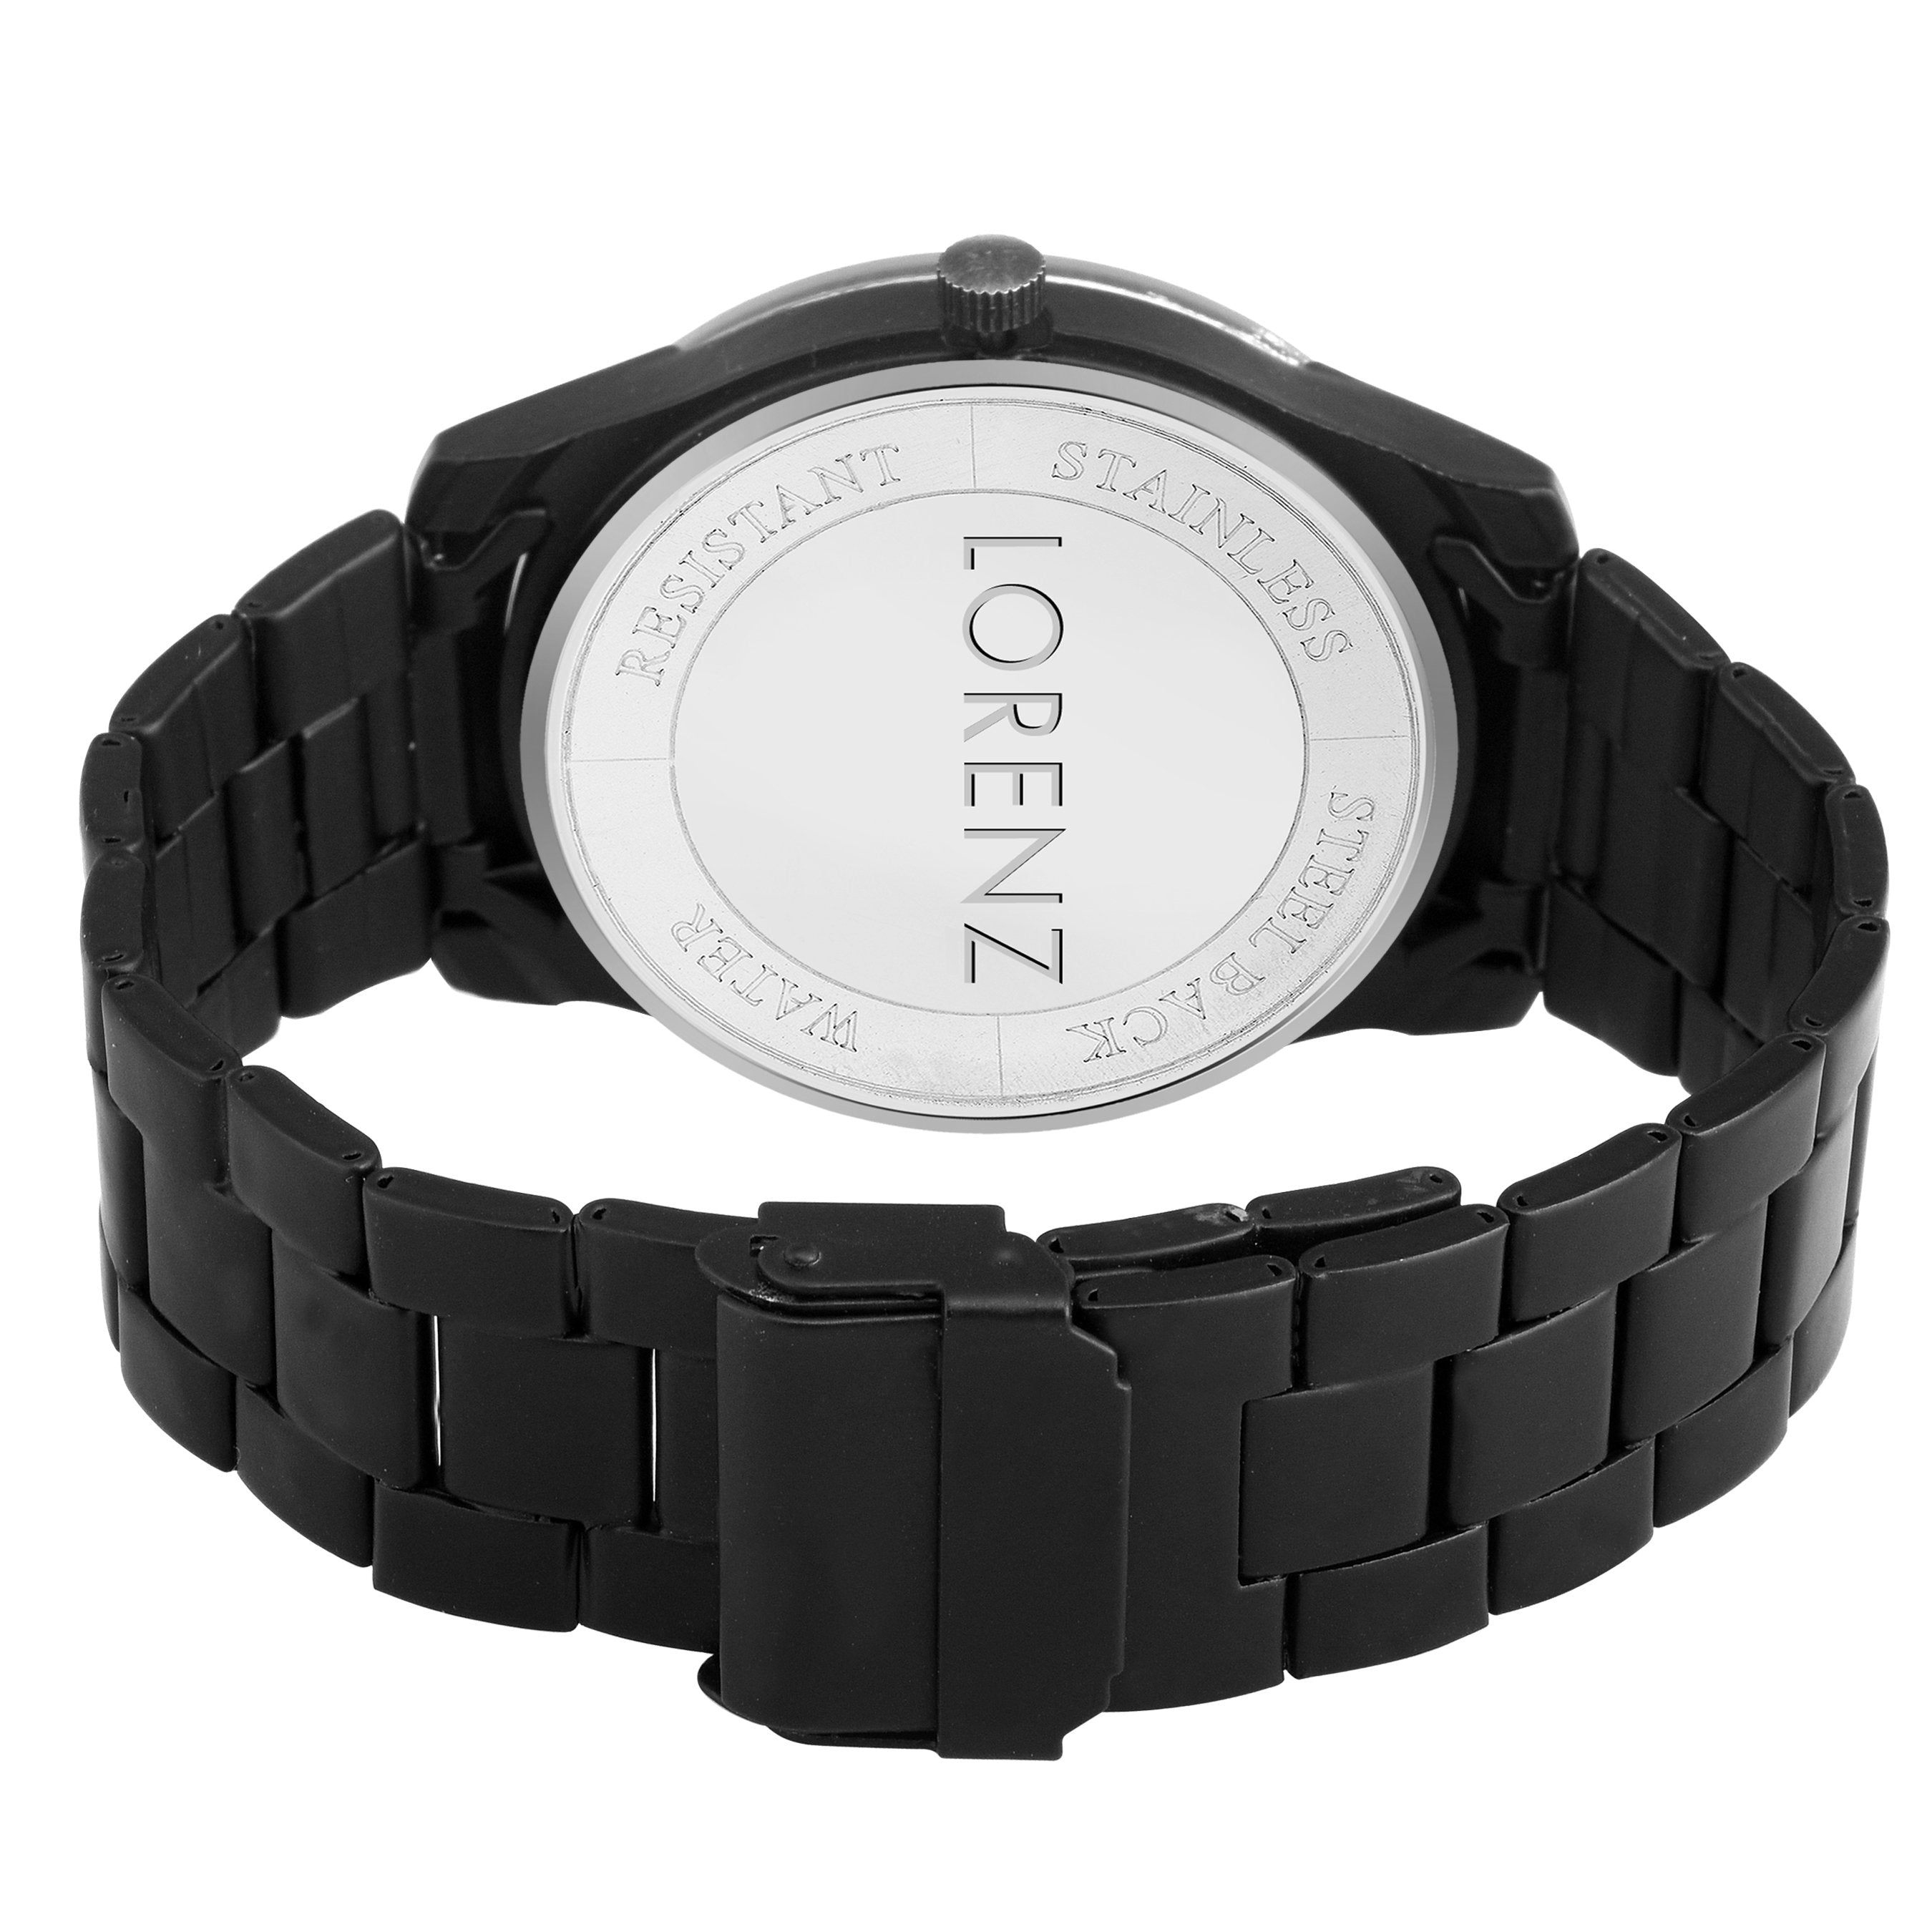 Lorenz Black Dial Men's Analog Watch- MK-1072A - Lorenz Fashion